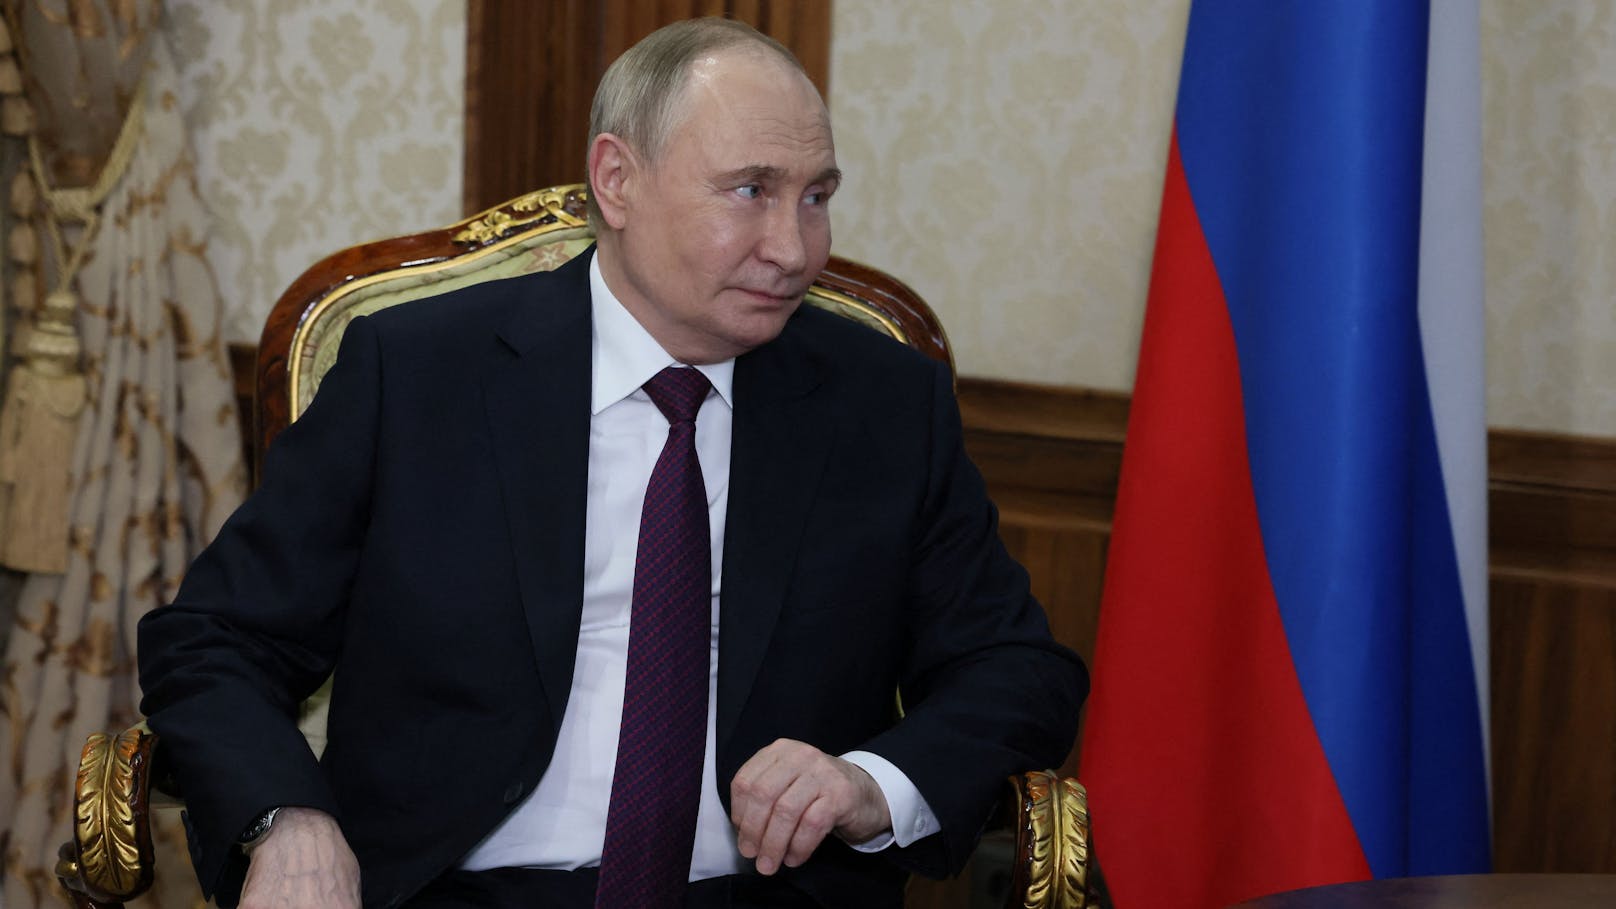 "Alles stabil": Putin verhöhnt jetzt EU-Sanktionen